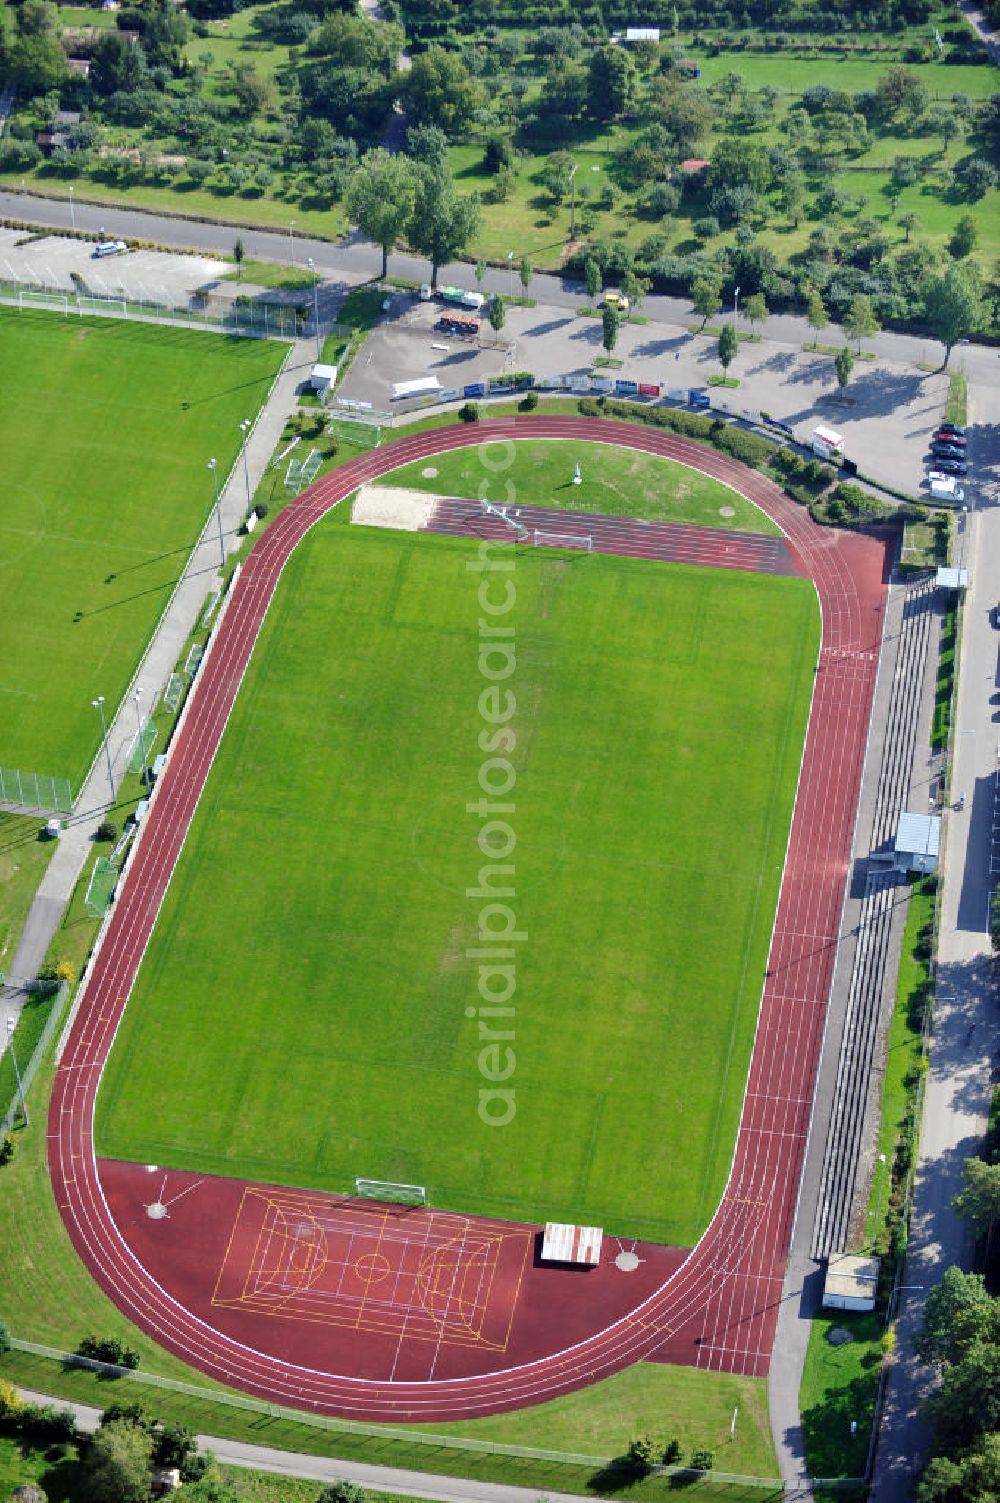 Aerial image Leingarten - Heuschelberg-Stadion und Trainingsplatz des Sportverein Leingarten 1895 e.V. in Baden-Württemberg. Heuschelberg-Stadium and training ground of the society Sportverein Leingarten 1895 e.V. in Baden-Wuerttemberg.